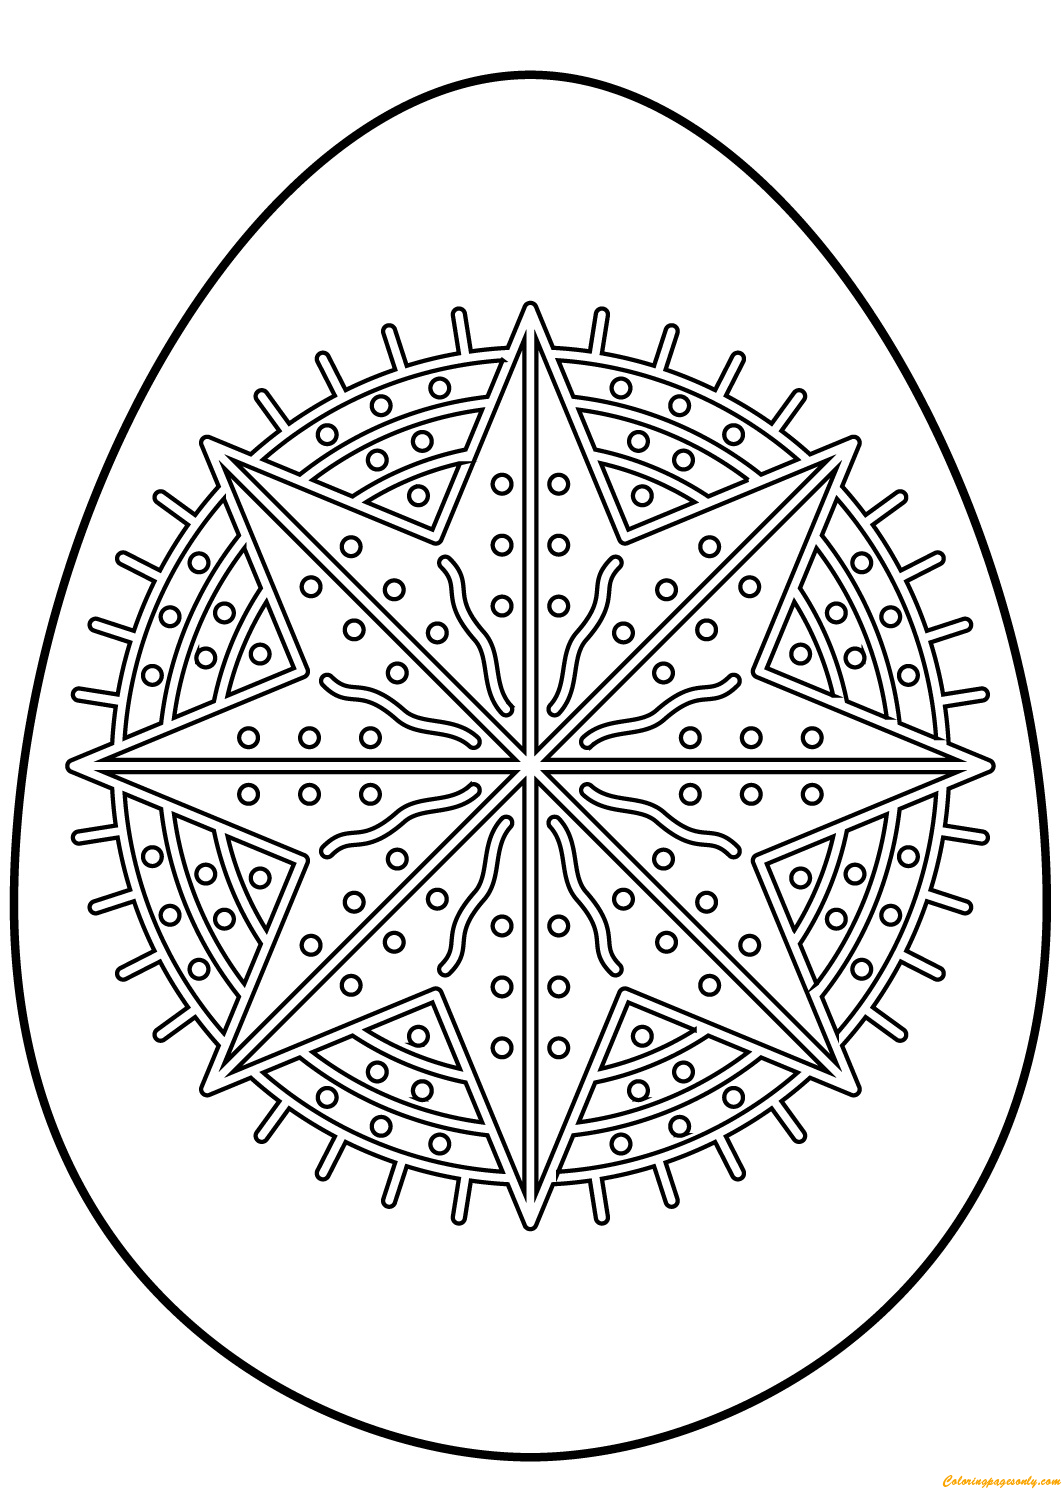 Пасхальное яйцо с узором звезды-октаграммы из пасхальных яиц